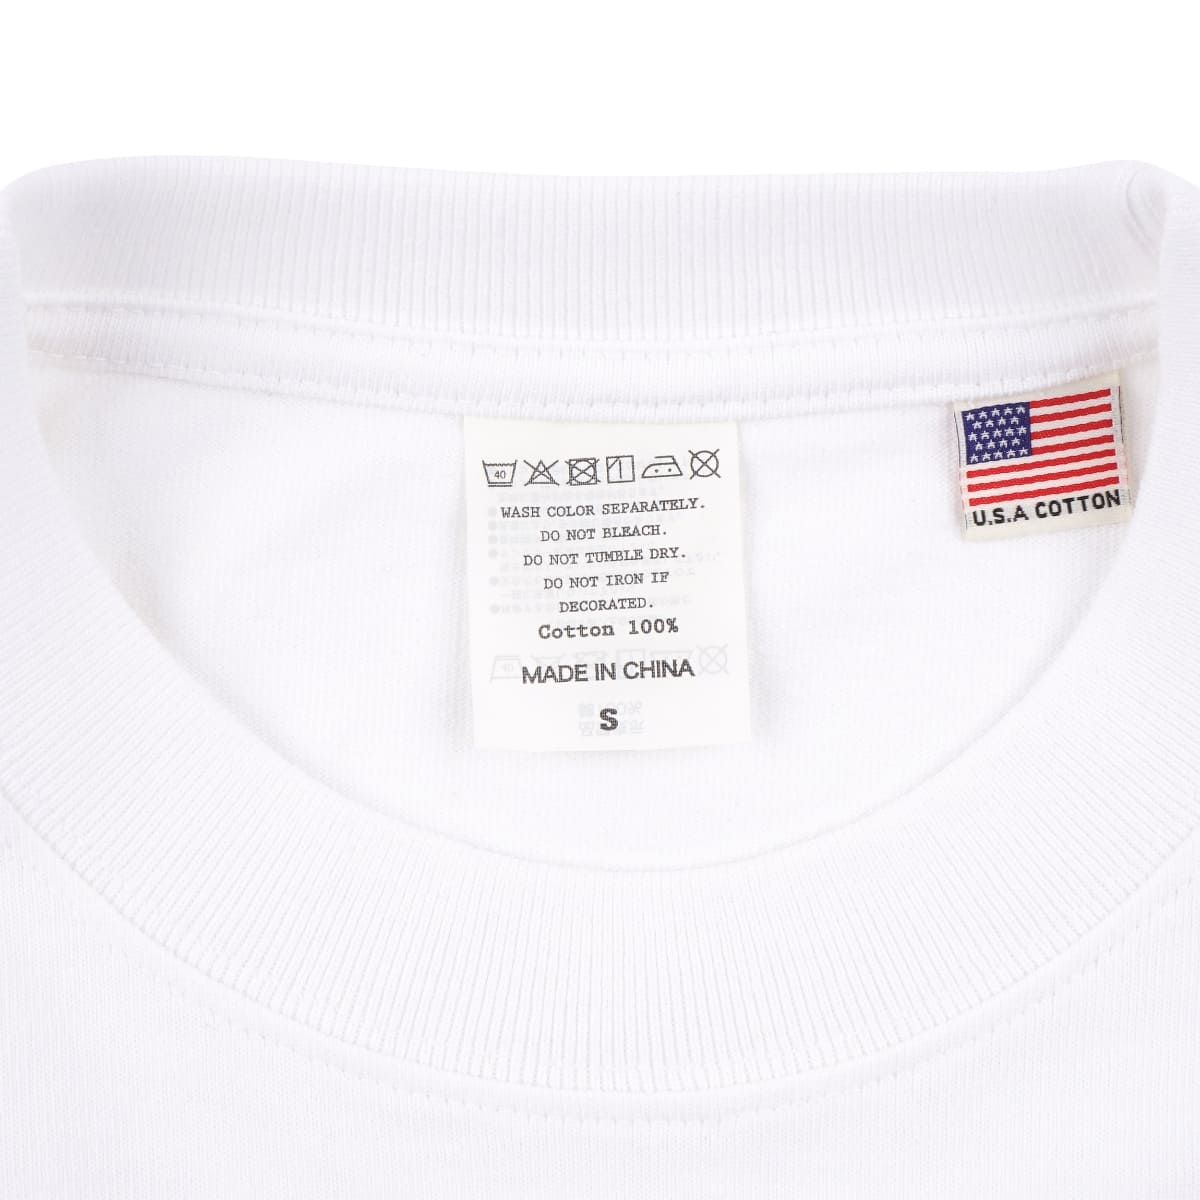 USAコットン ロングスリーブTシャツ | メンズ | 1枚 | UCL-951 | ネイビー